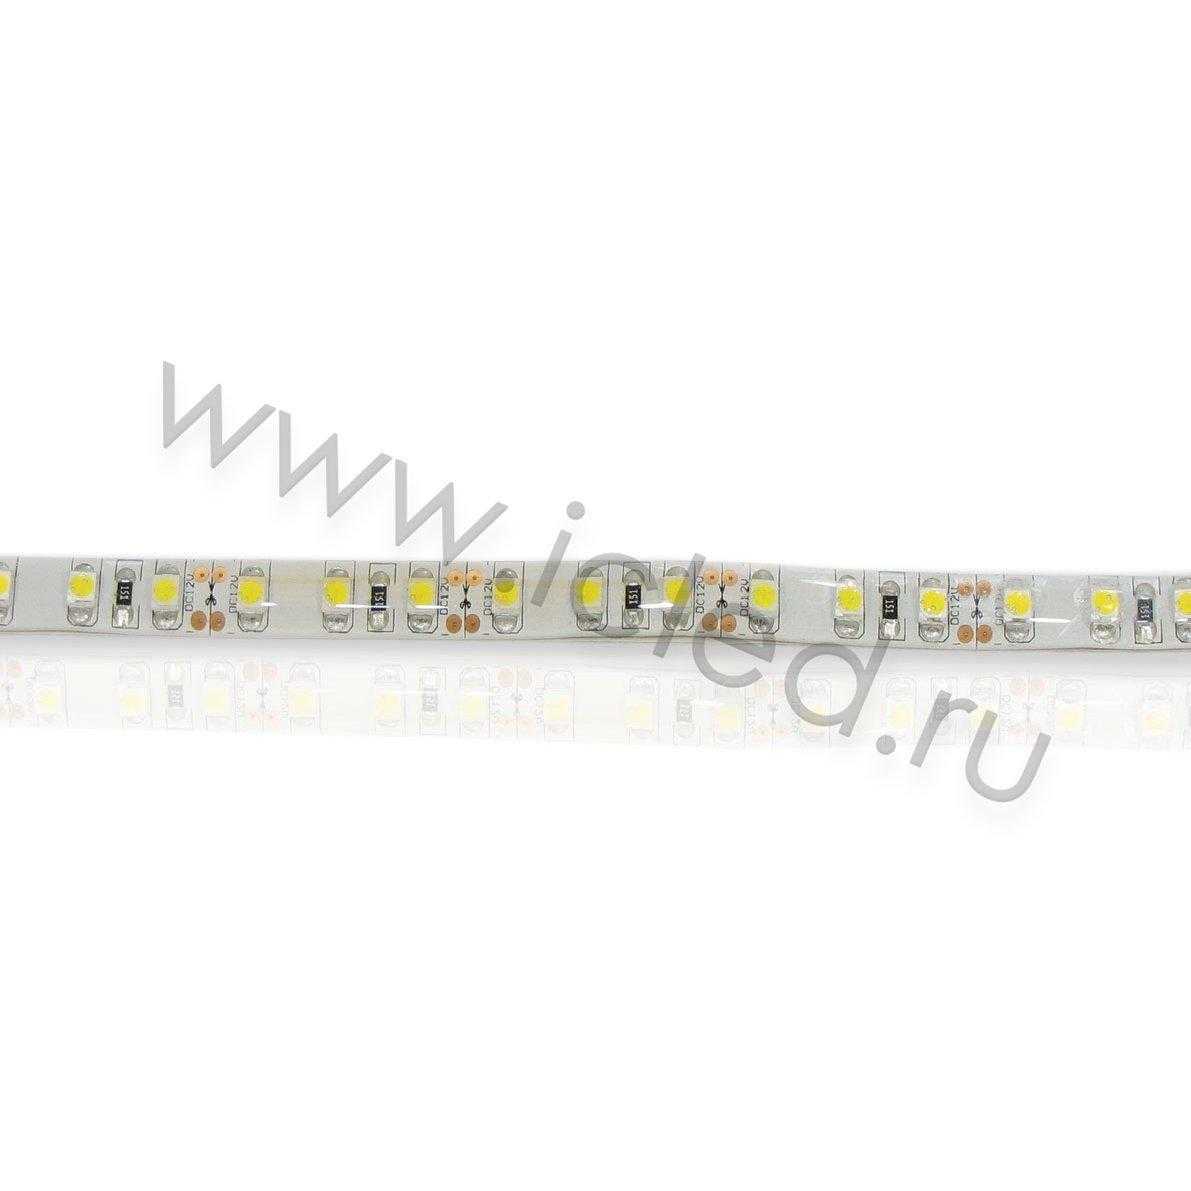 Влагозащищенные светодиодные ленты Светодиодная лента LUX class, 3528, 120 led/m, Warm White, 12V, IP65 Icled